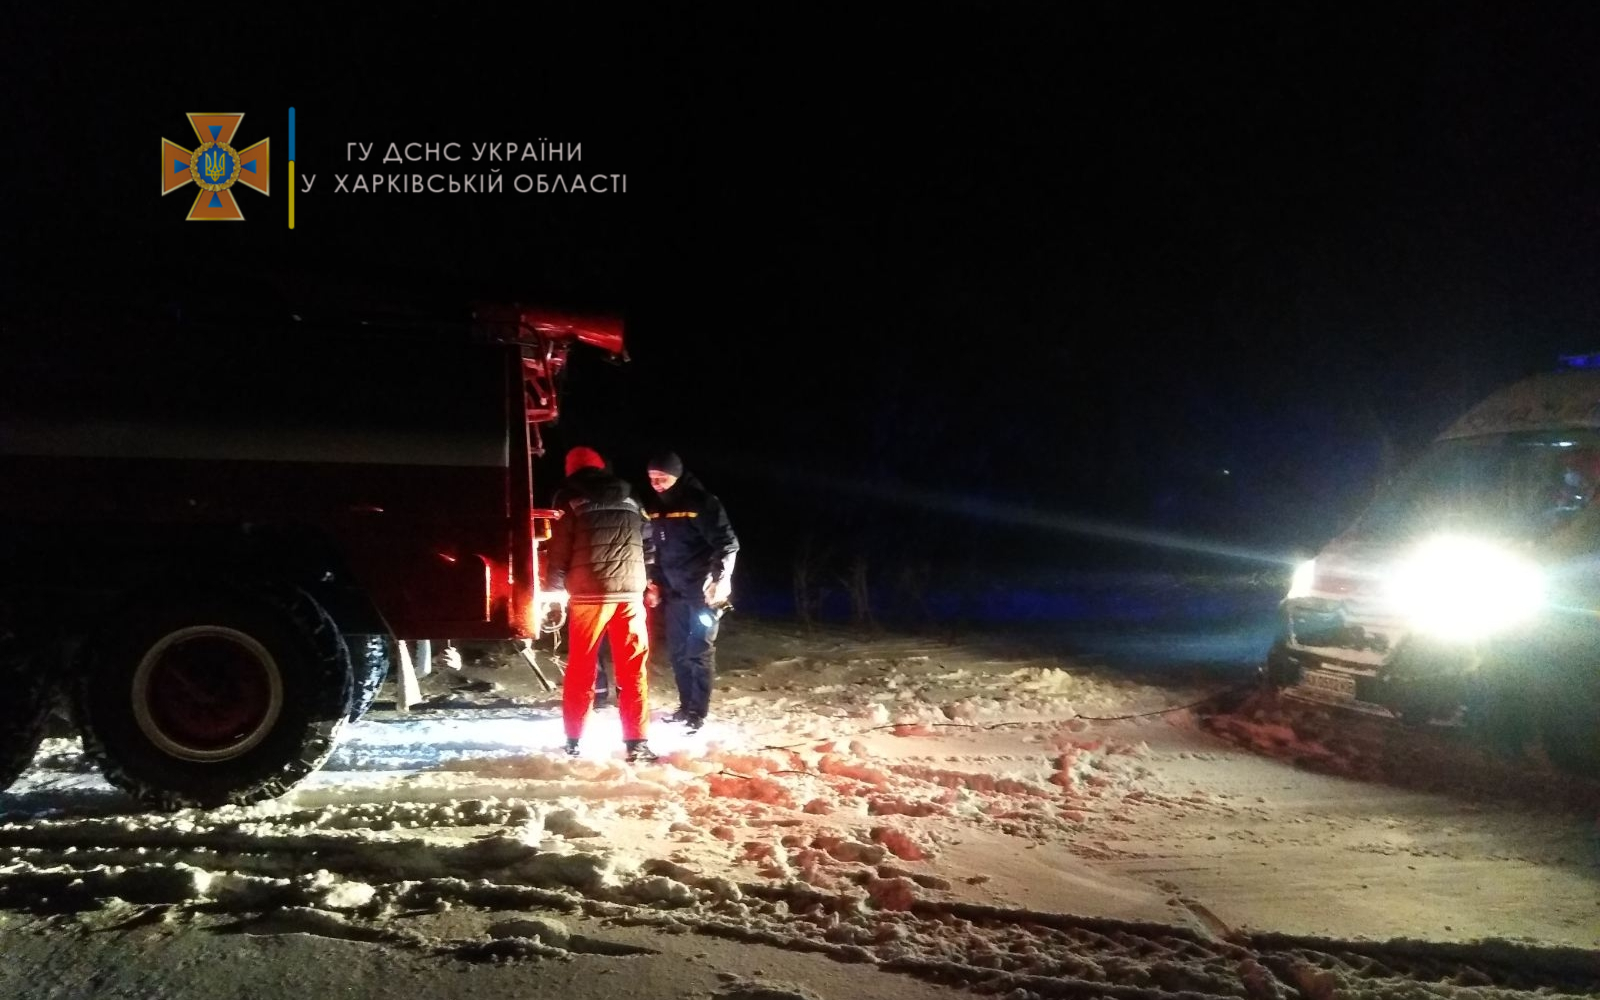 Непогода на Харьковщине. Спасатели достают из снежных заносов автомобили (фото)